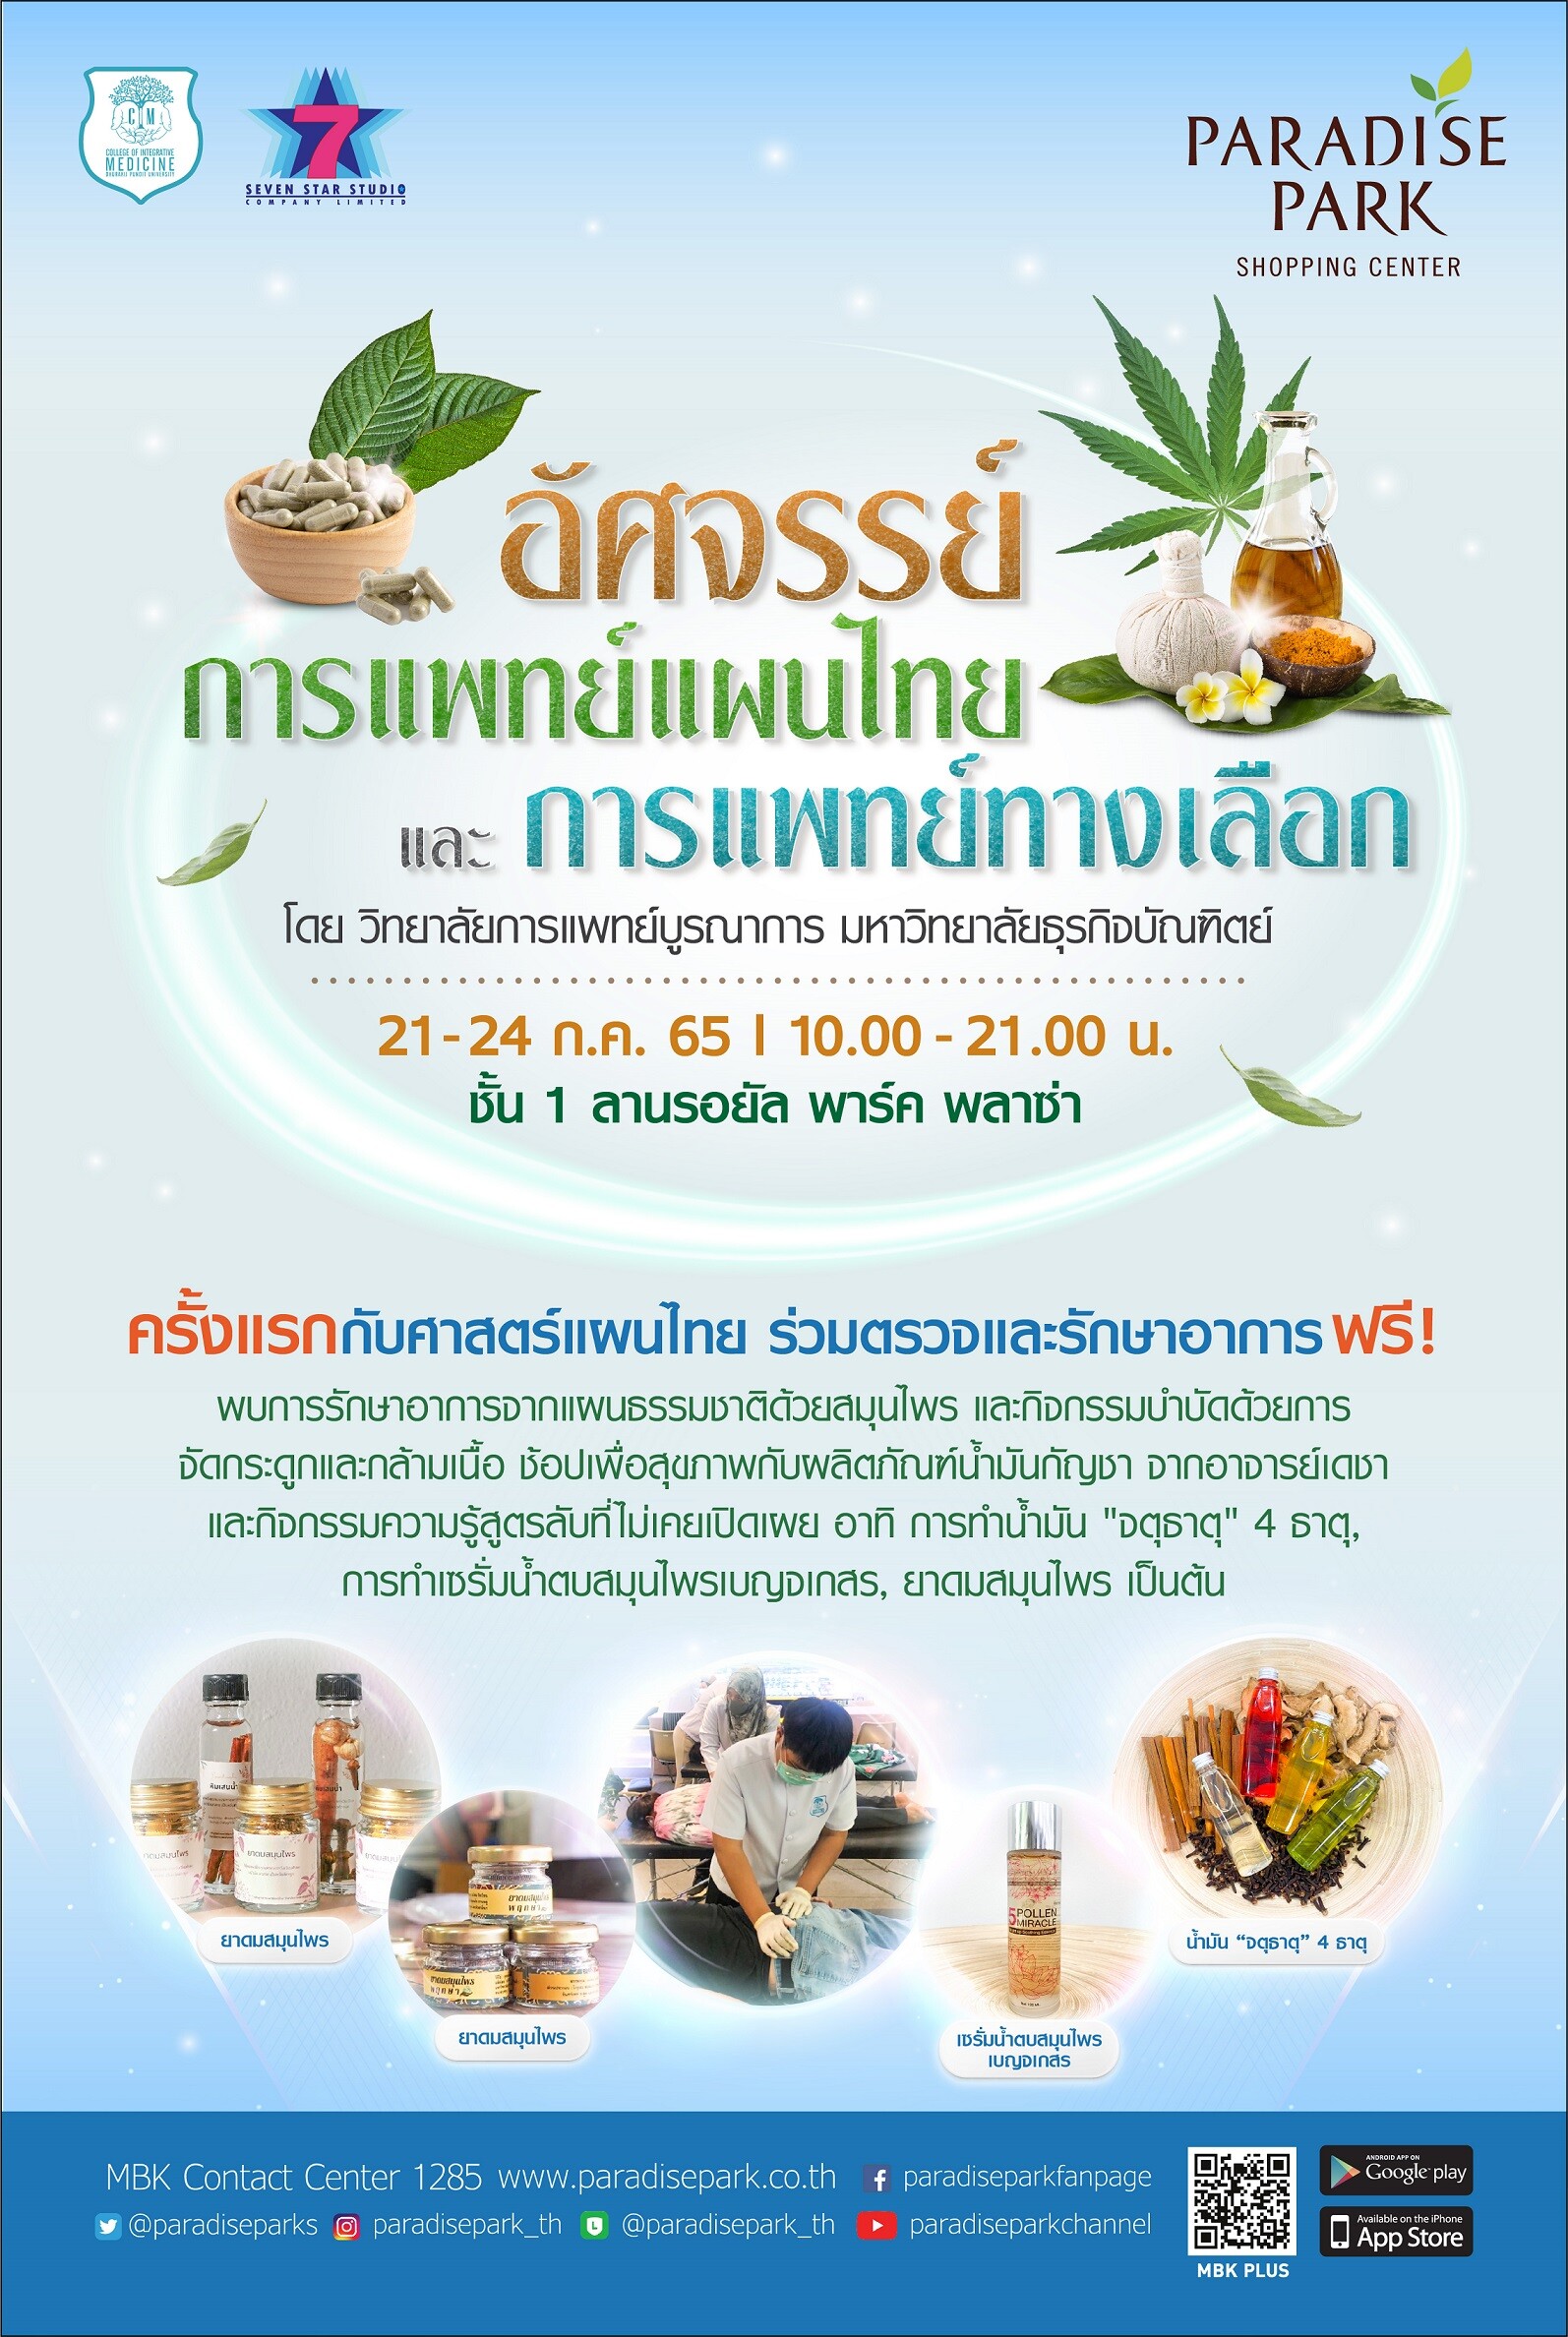 พาราไดซ์ พาร์ค จัดงาน "พาราไดซ์ พาร์ค อัศจรรย์การแพทย์แผนไทย และการแพทย์ทางเลือก" ตรวจรักษาฟรี! ด้วยศาสตร์แผนไทย 21-24 ก.ค. นี้